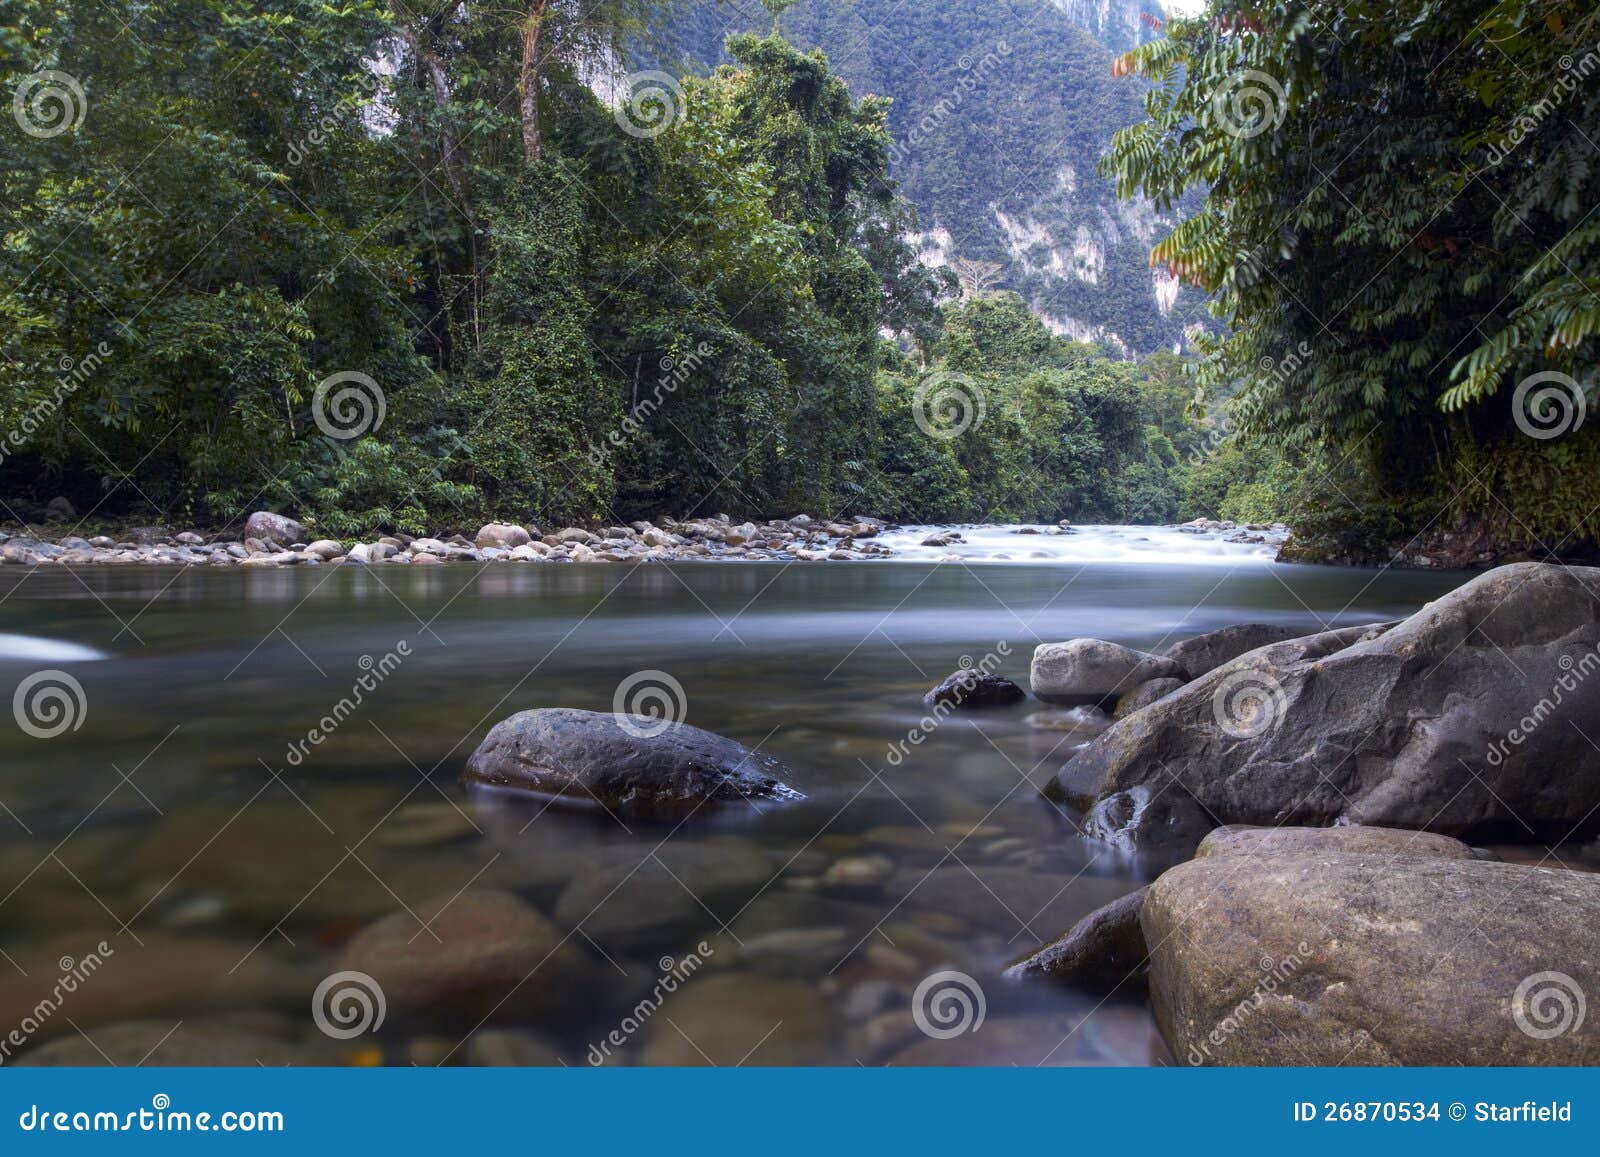 gunung mulu national park river in borneo,malaysia